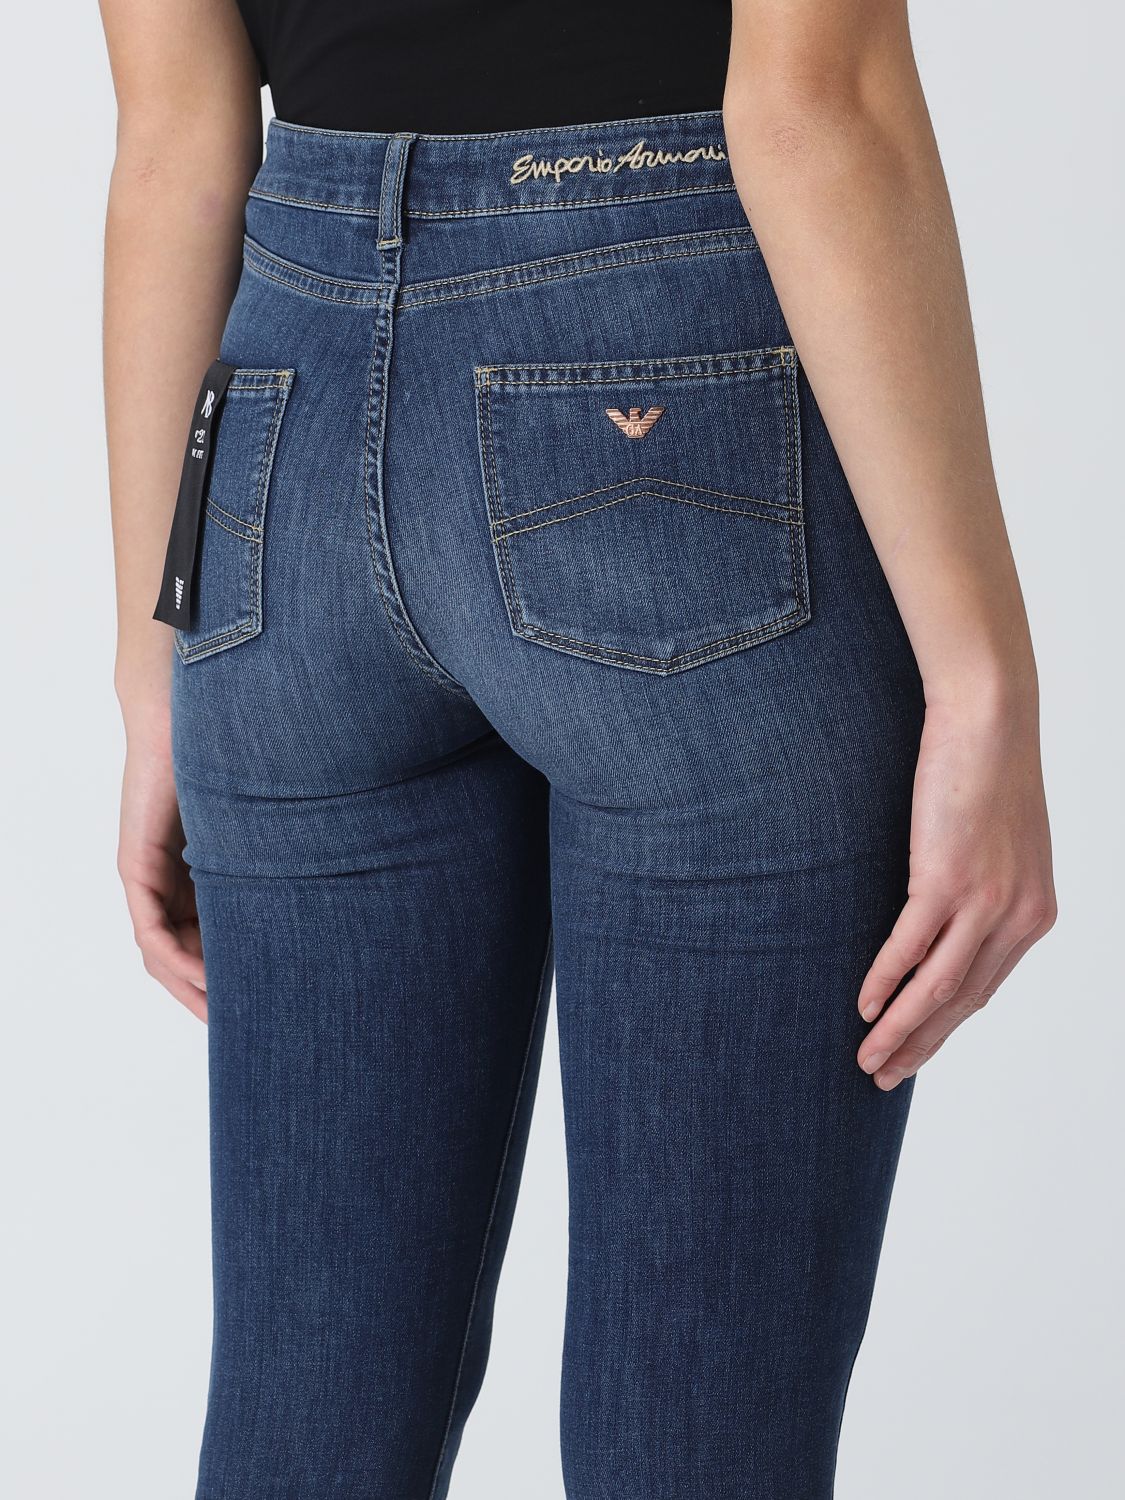 denim jeans - Denim | Emporio Armani jeans 3R2J182DZ4Z online on GIGLIO.COM